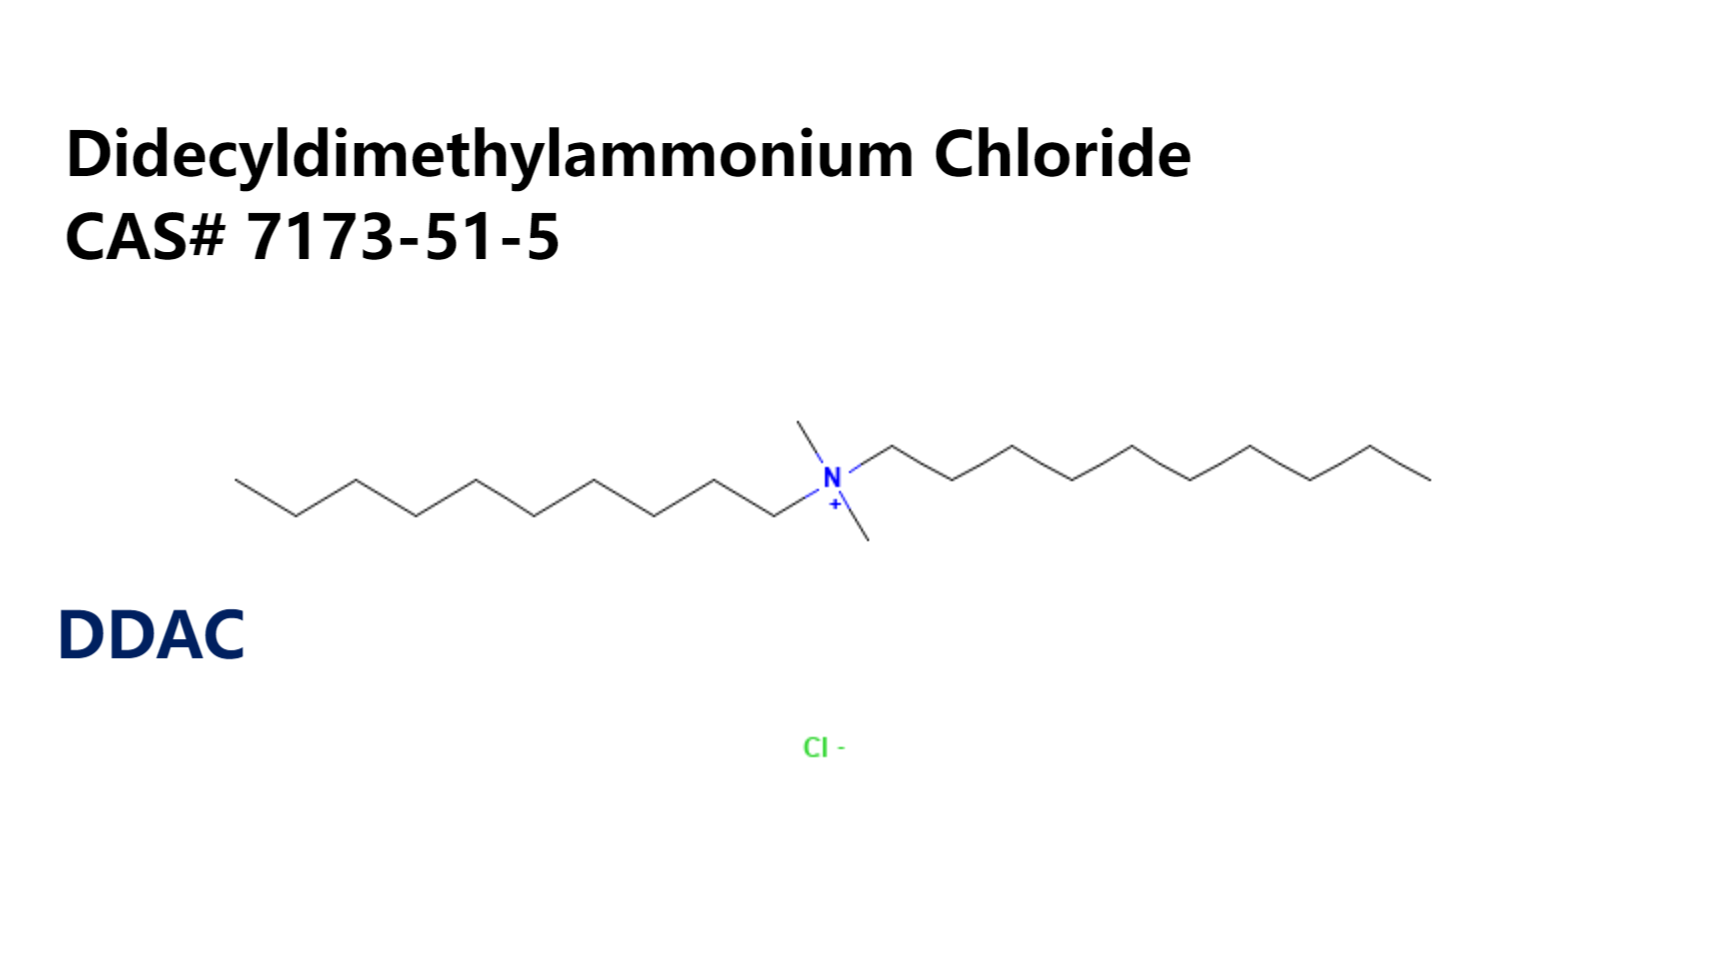 Didecyldimethylammonium Chloride, DDAC